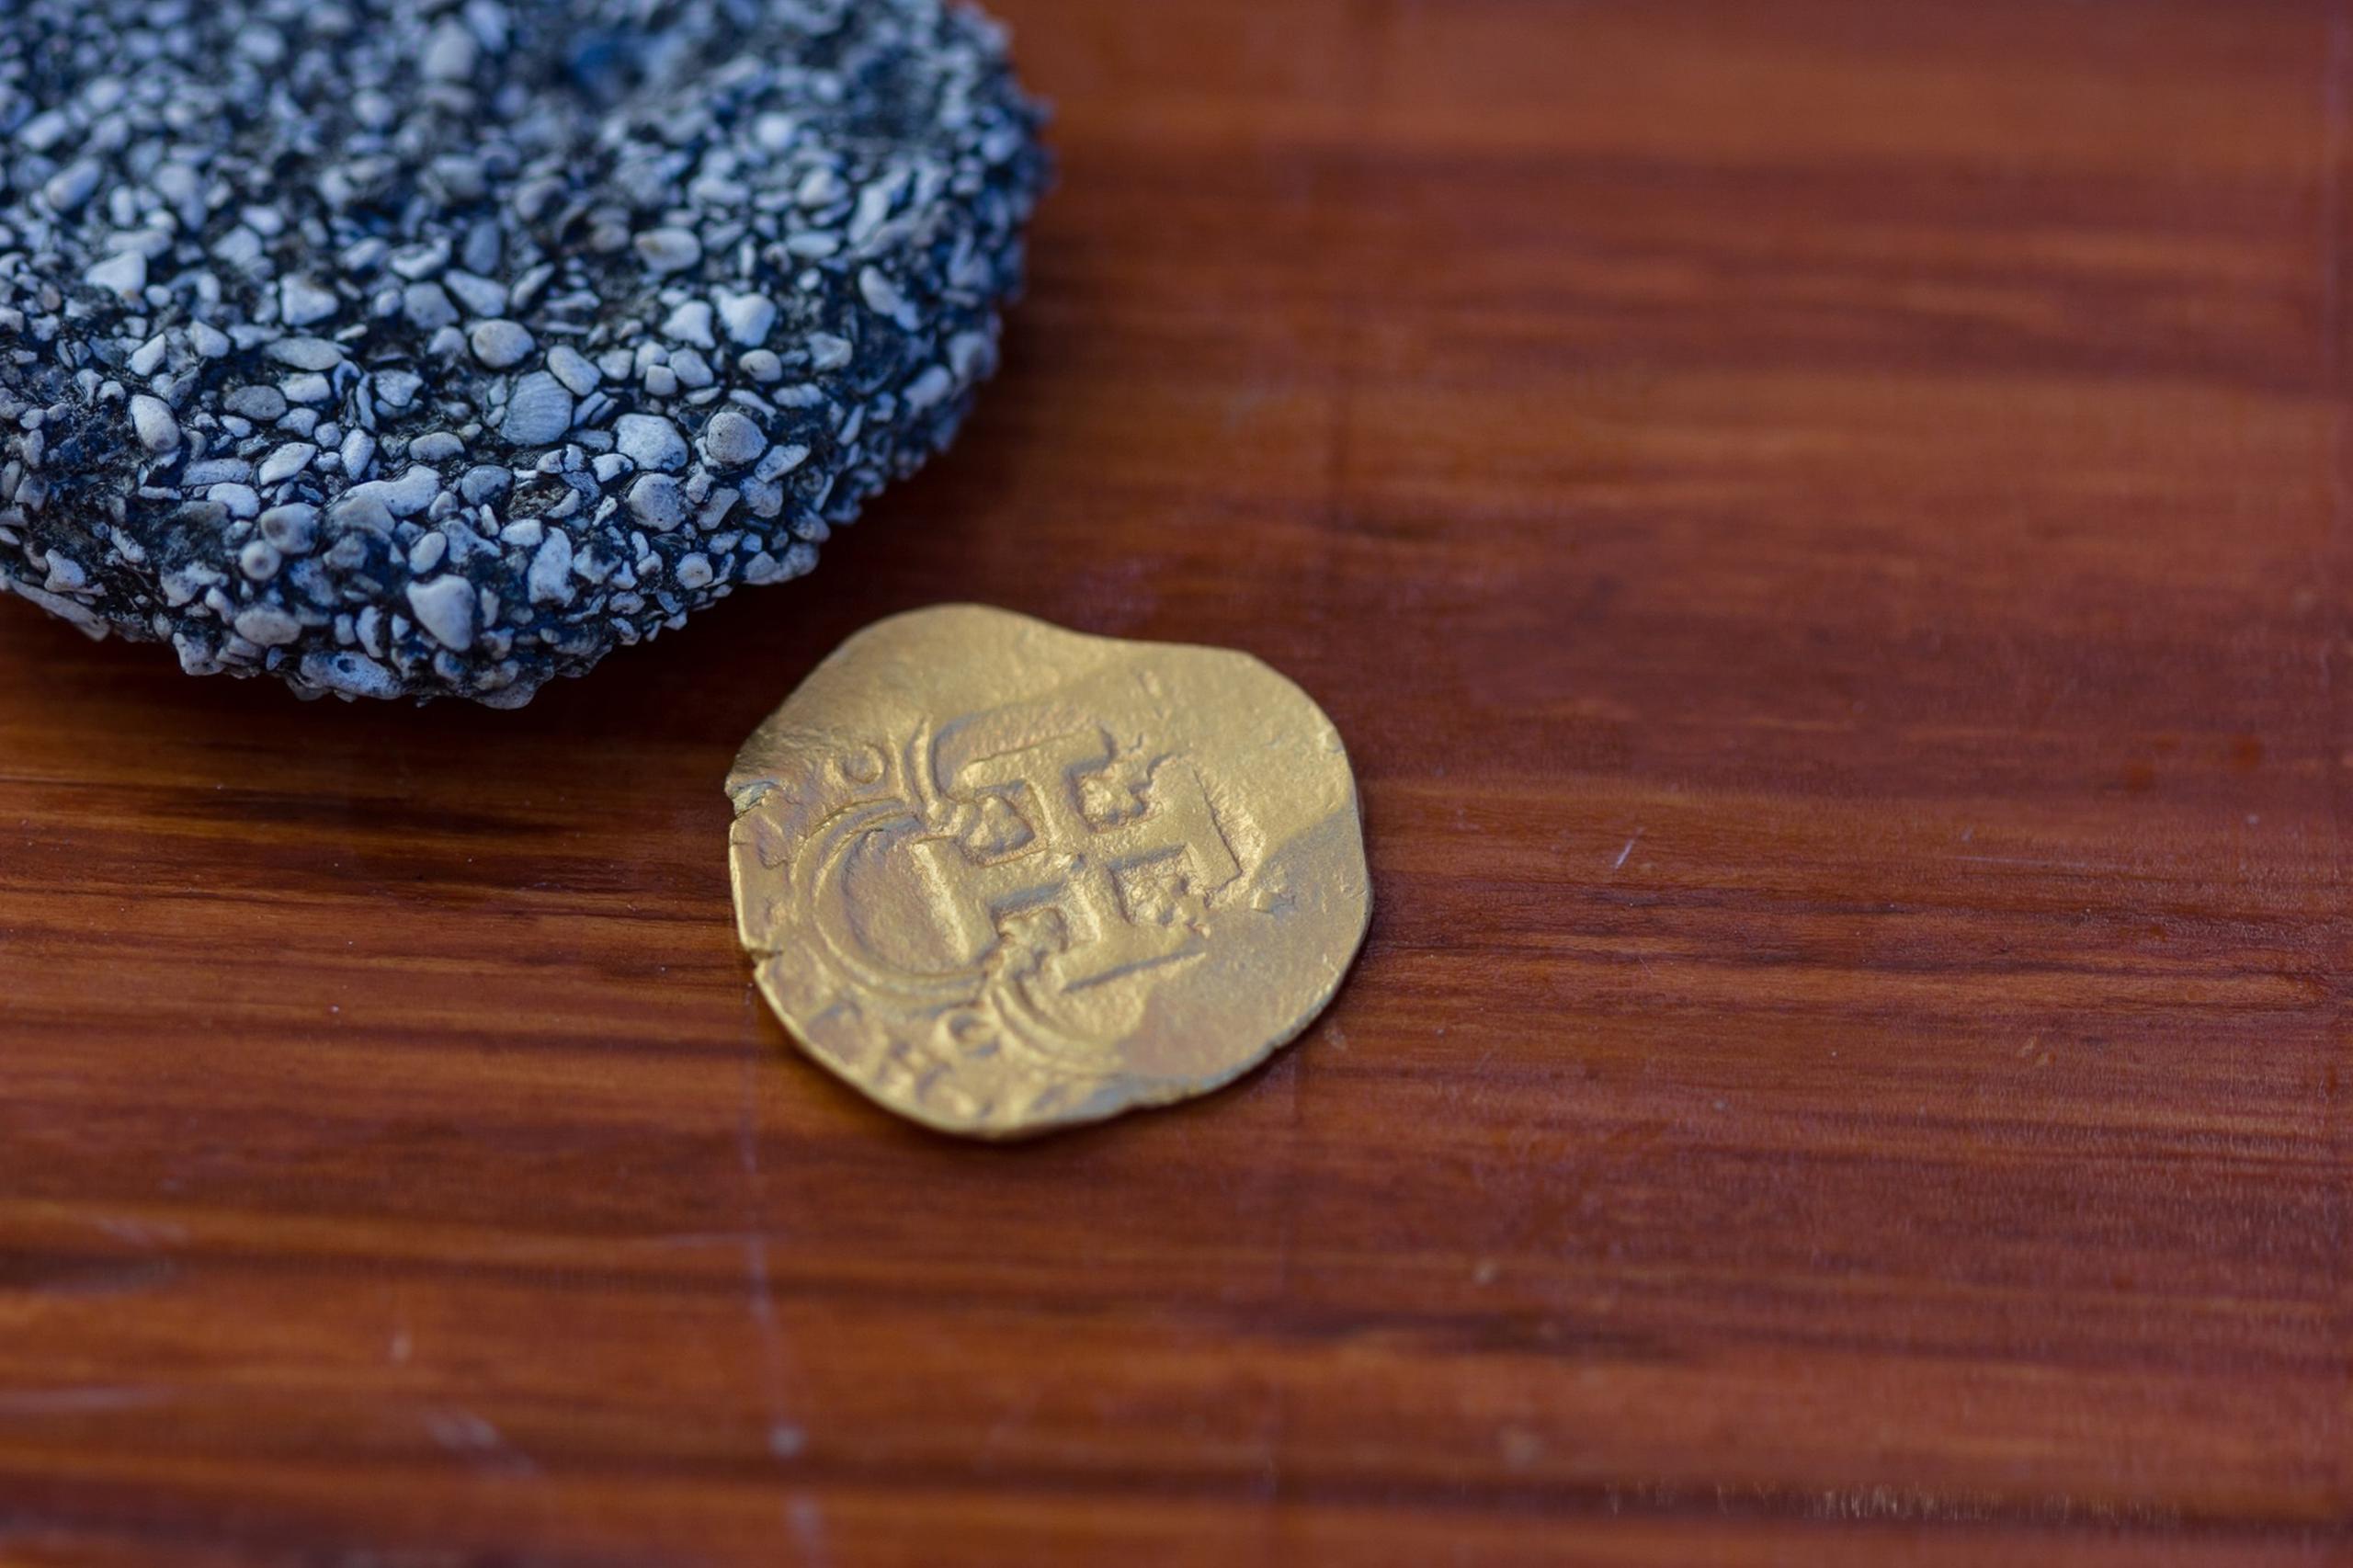 La moneda de oro del cargamento del galeón Nuestra Señora de Atocha hallada a solo 76 centímetros de profundidad en Key West, Florida.